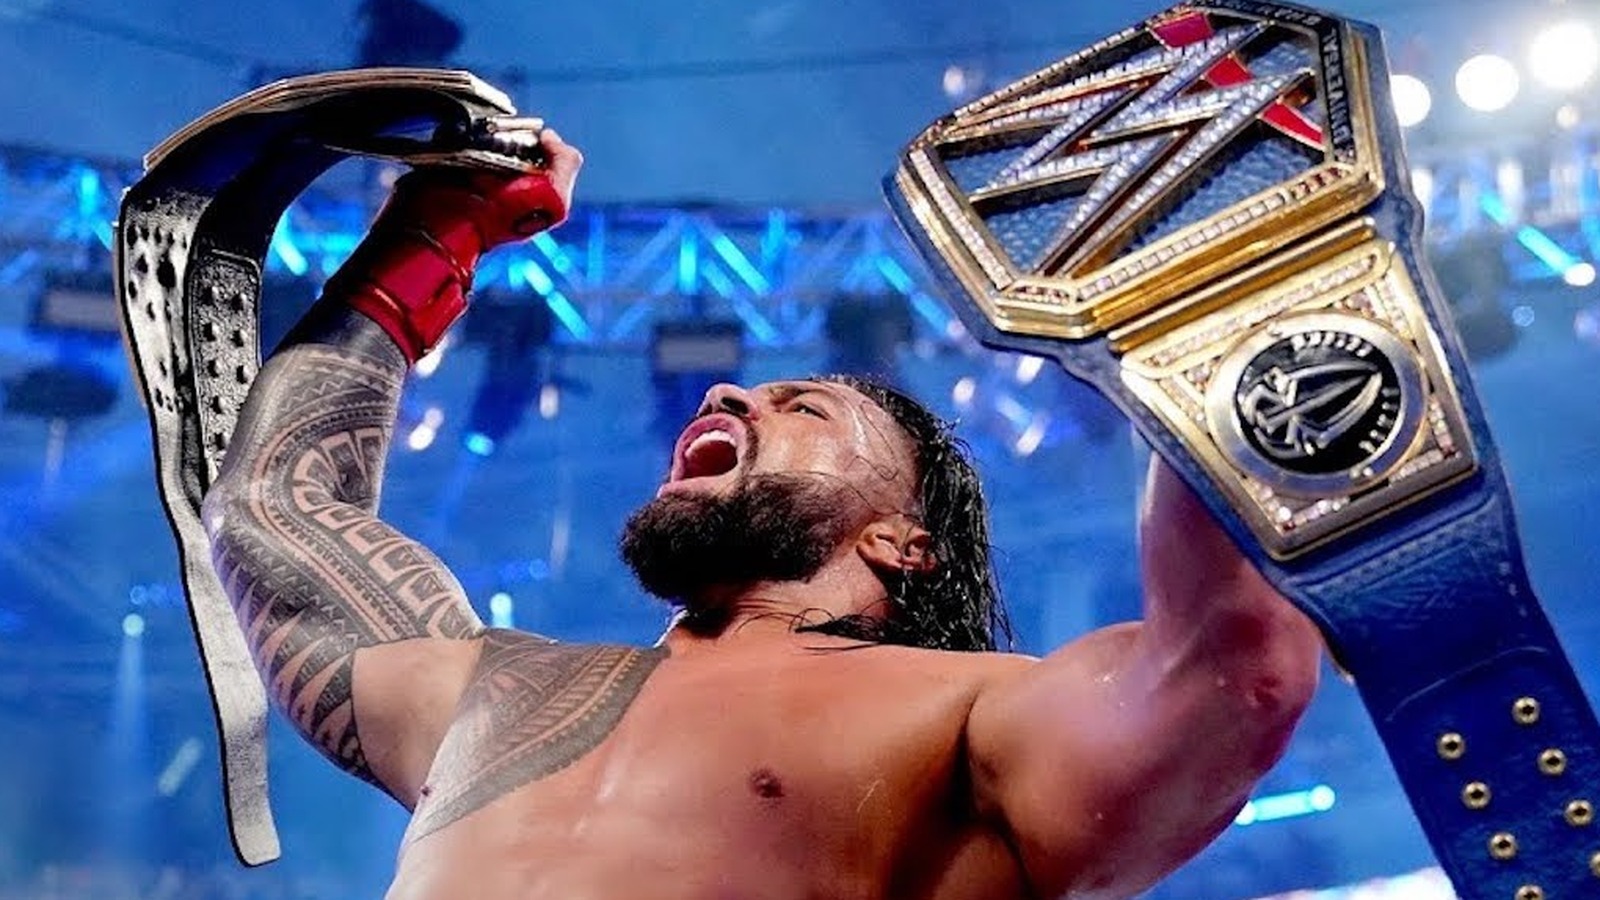 El reinado del Campeonato Universal WWE de Roman Reigns alcanza oficialmente otro gran hito